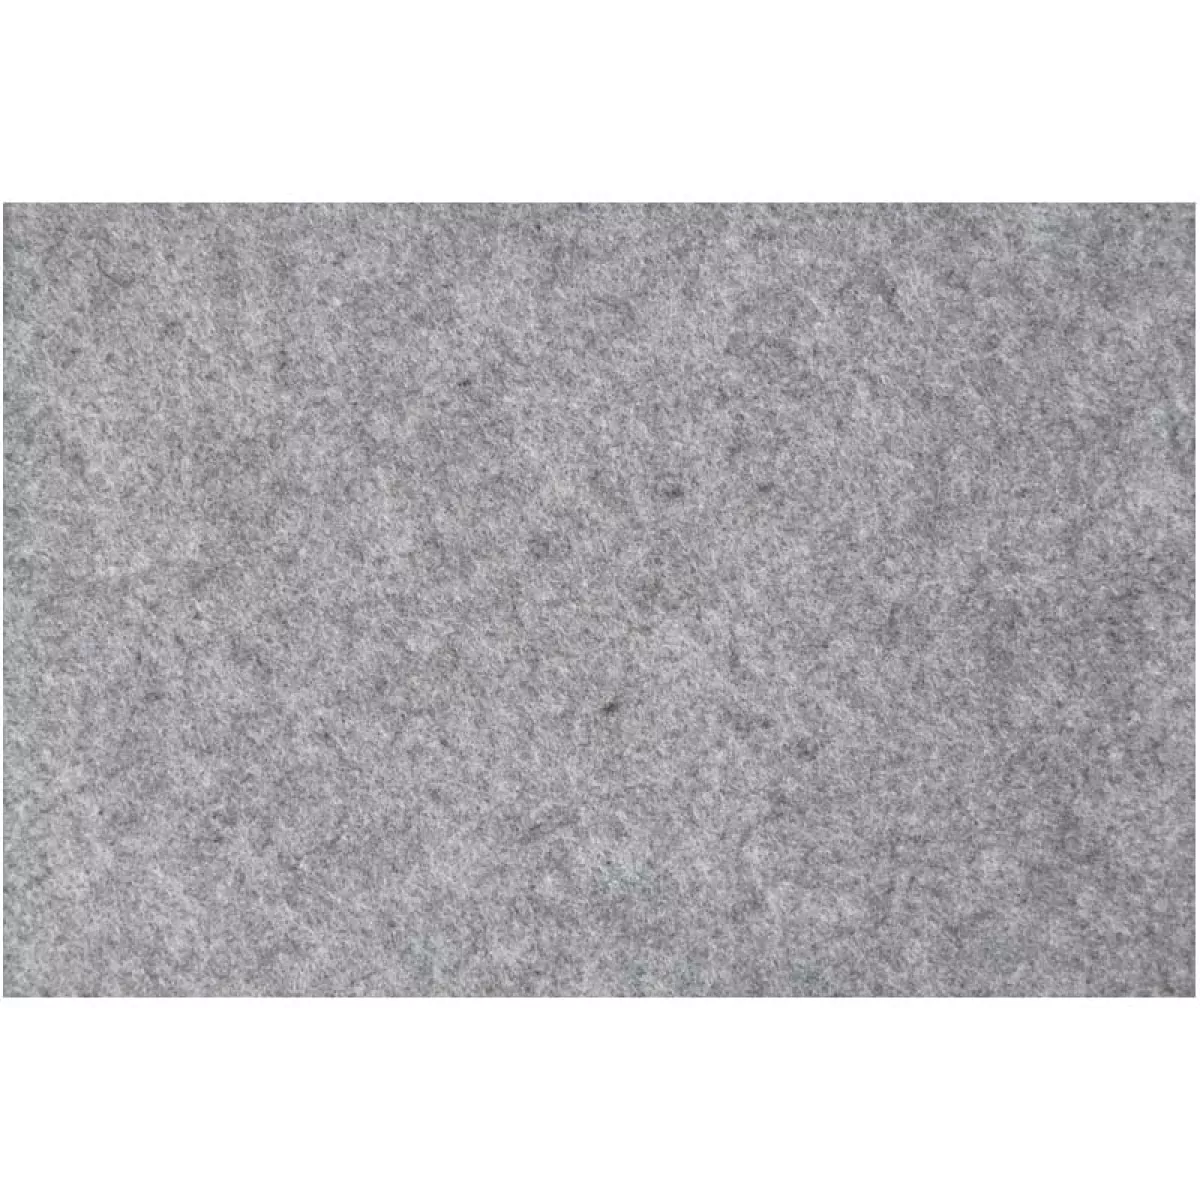 #1 - Hobbyfilt, 42x60 cm, tykkelse 3 mm, grå, 1 ark